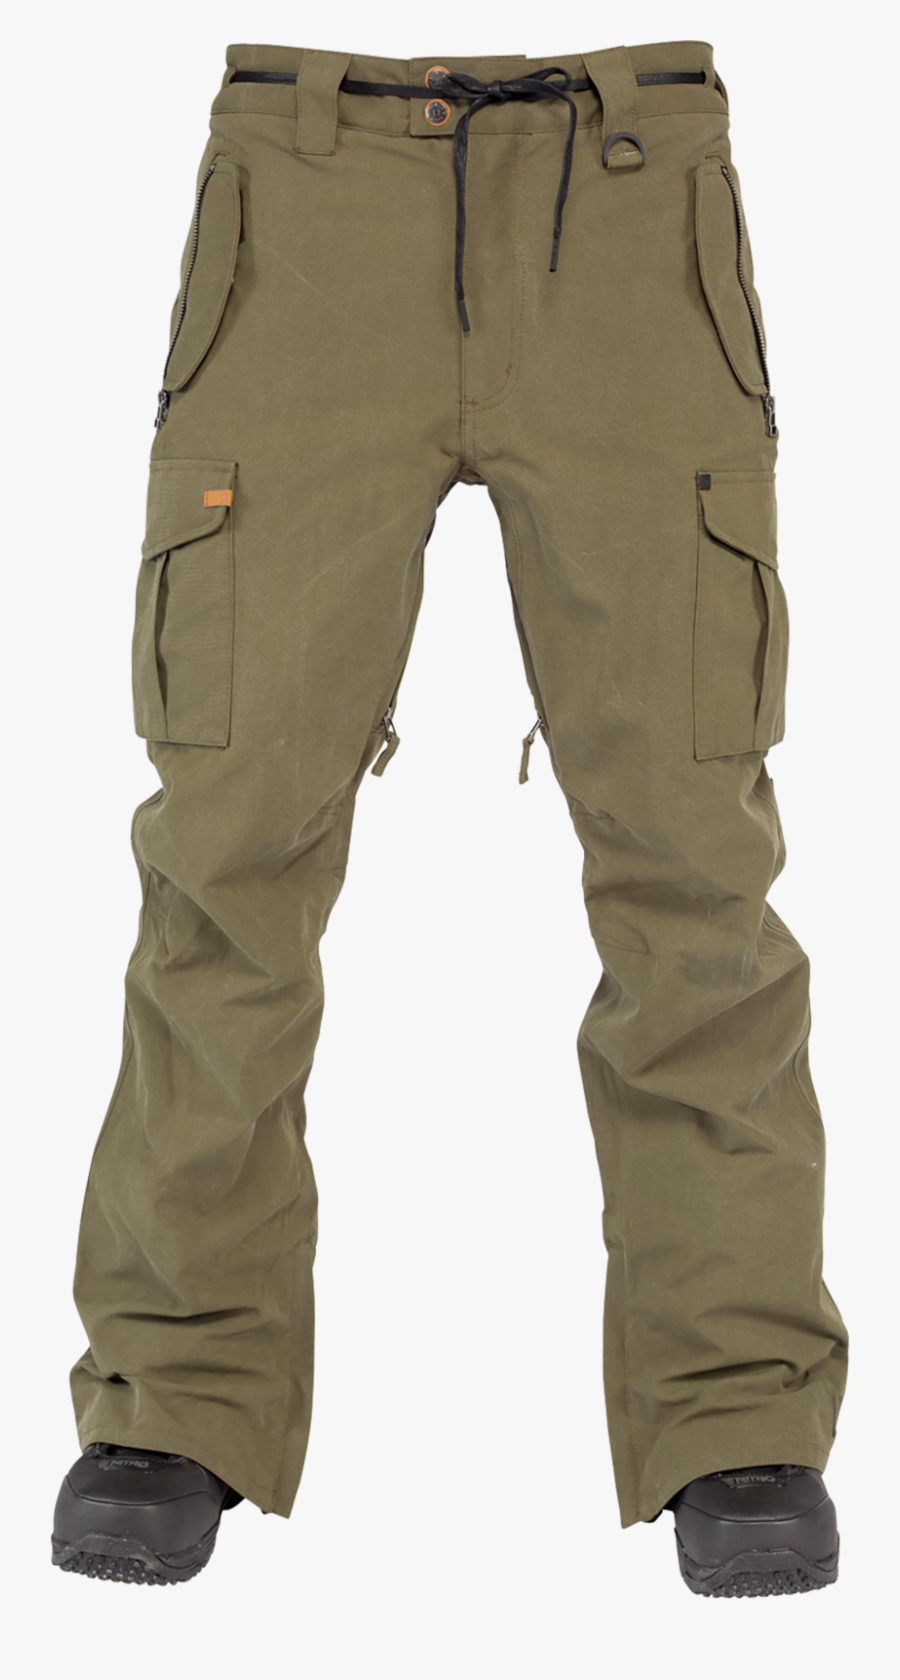 Pant Clipart Khaki Pants - Cargo Pants Png, Transparent Clipart